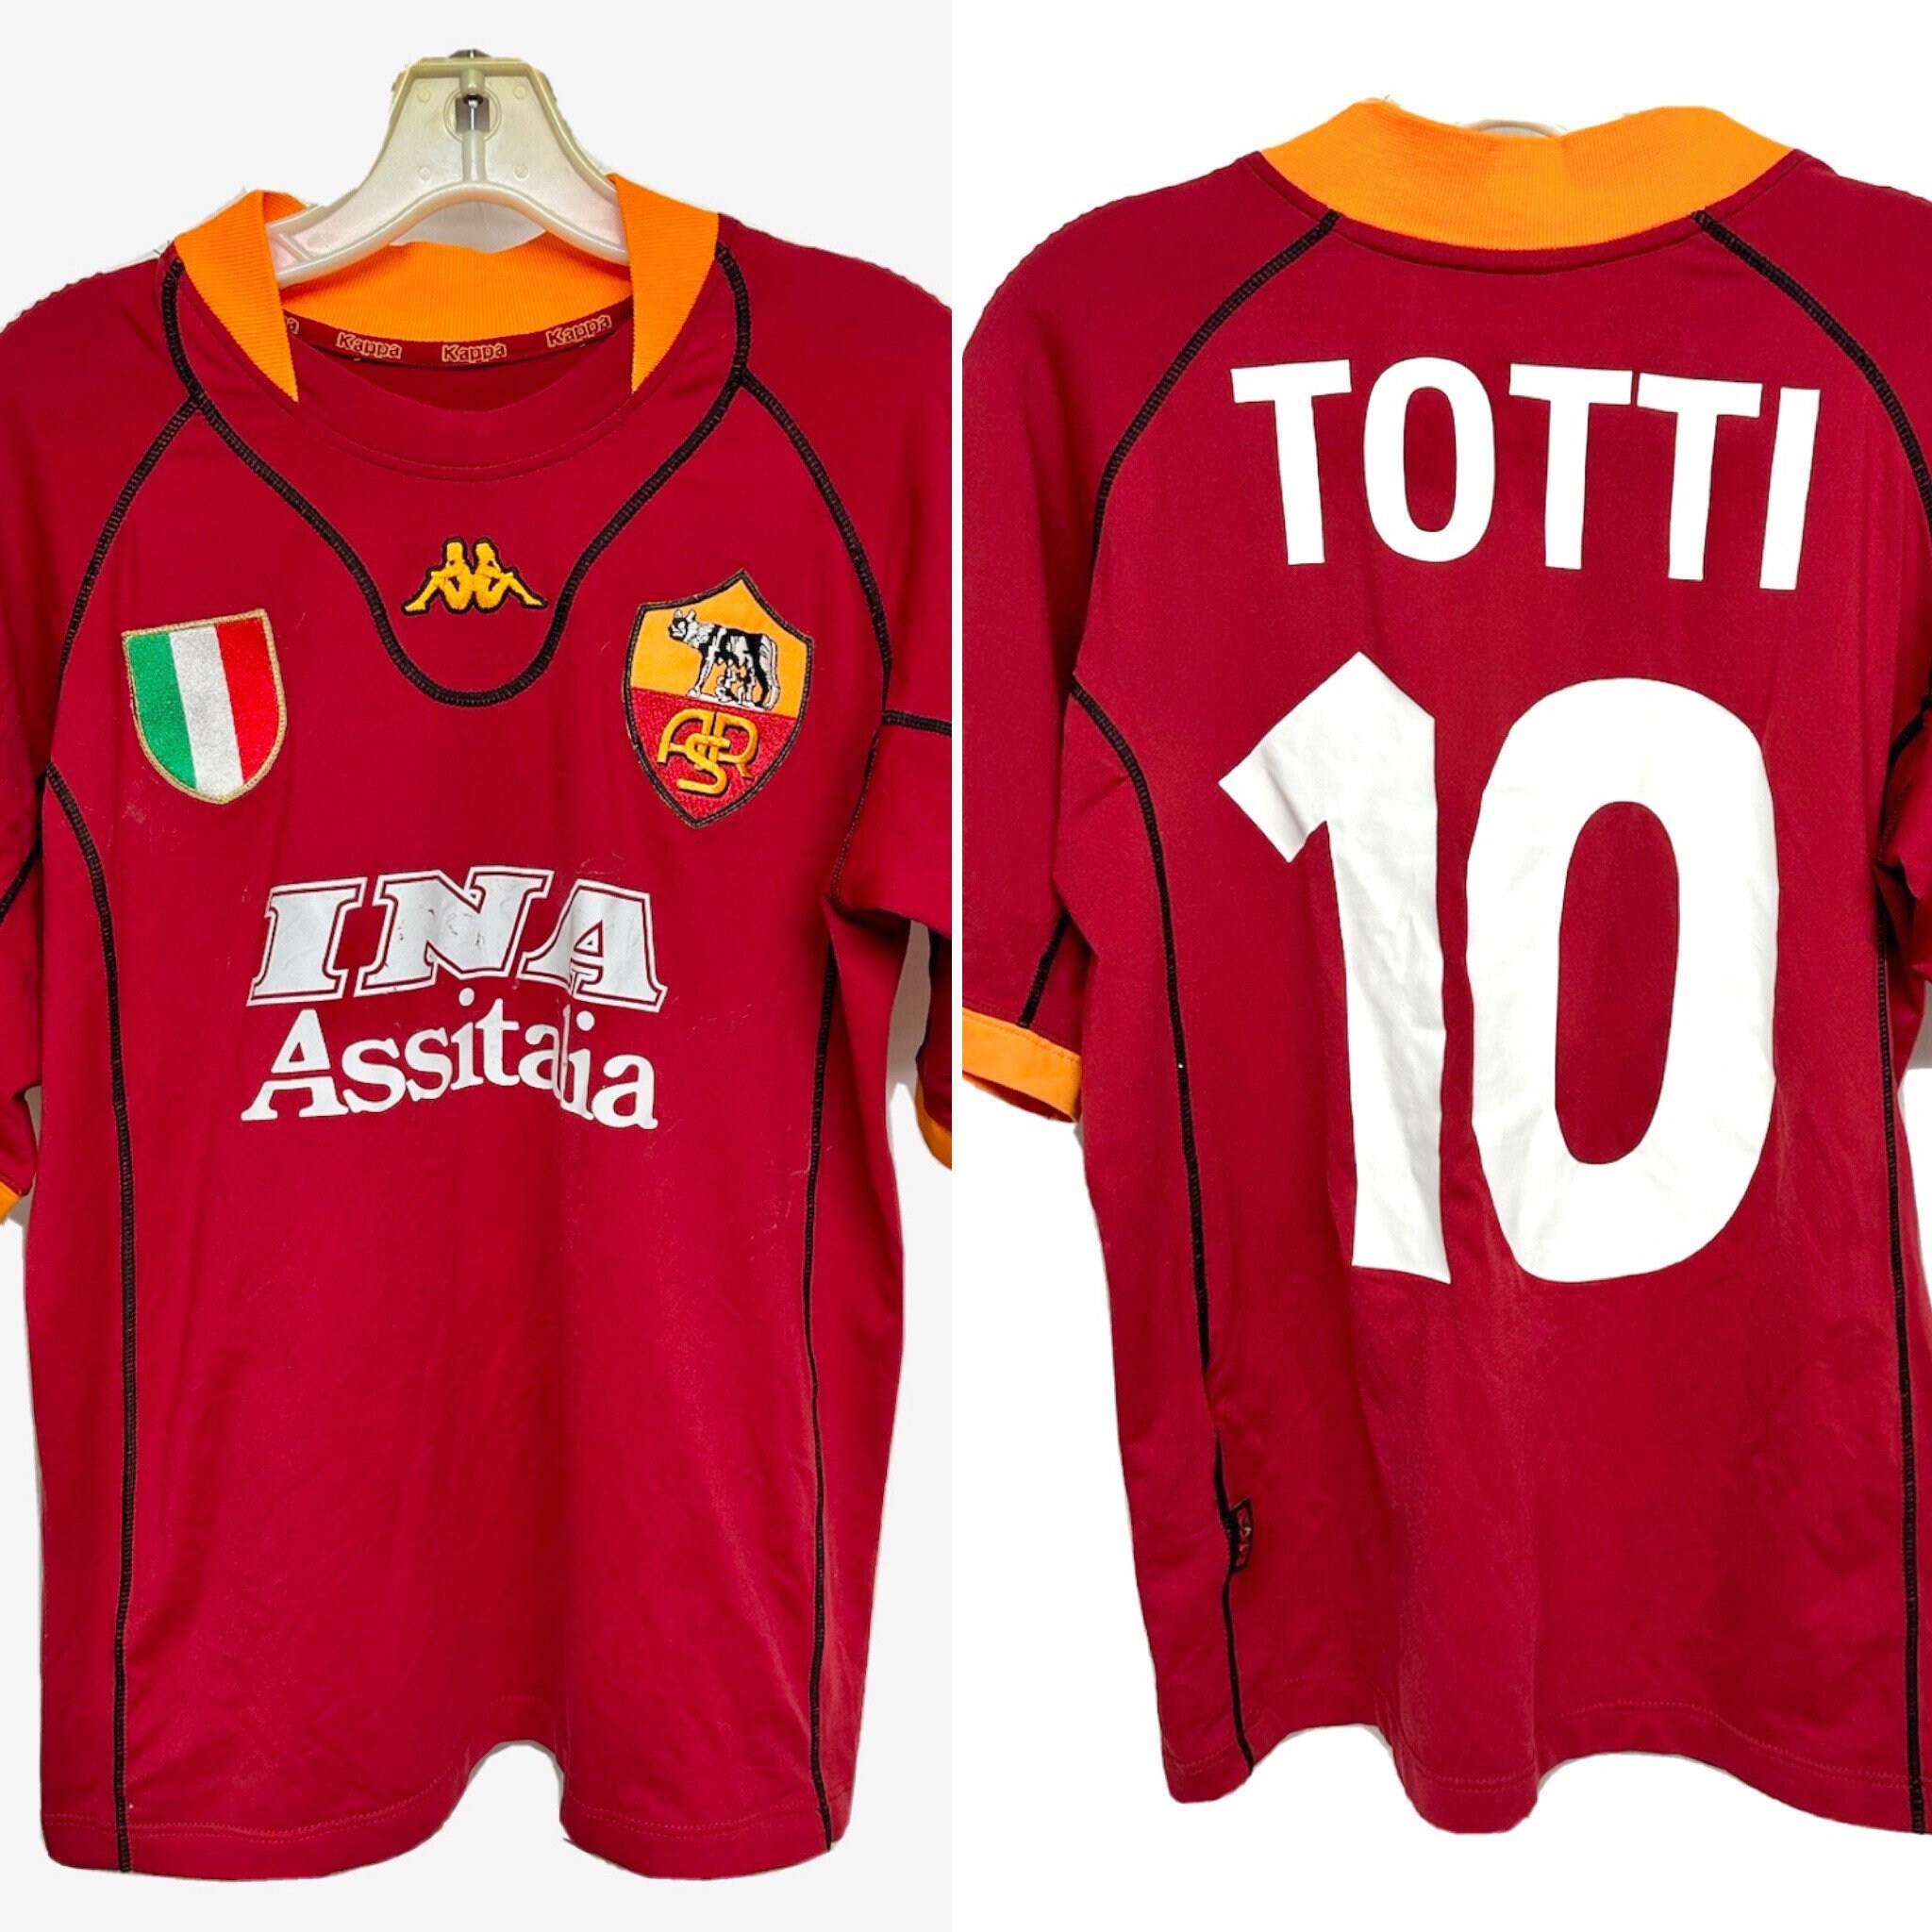 2001 Kappa AS Roma Totti Soccer Jersey - Etsy